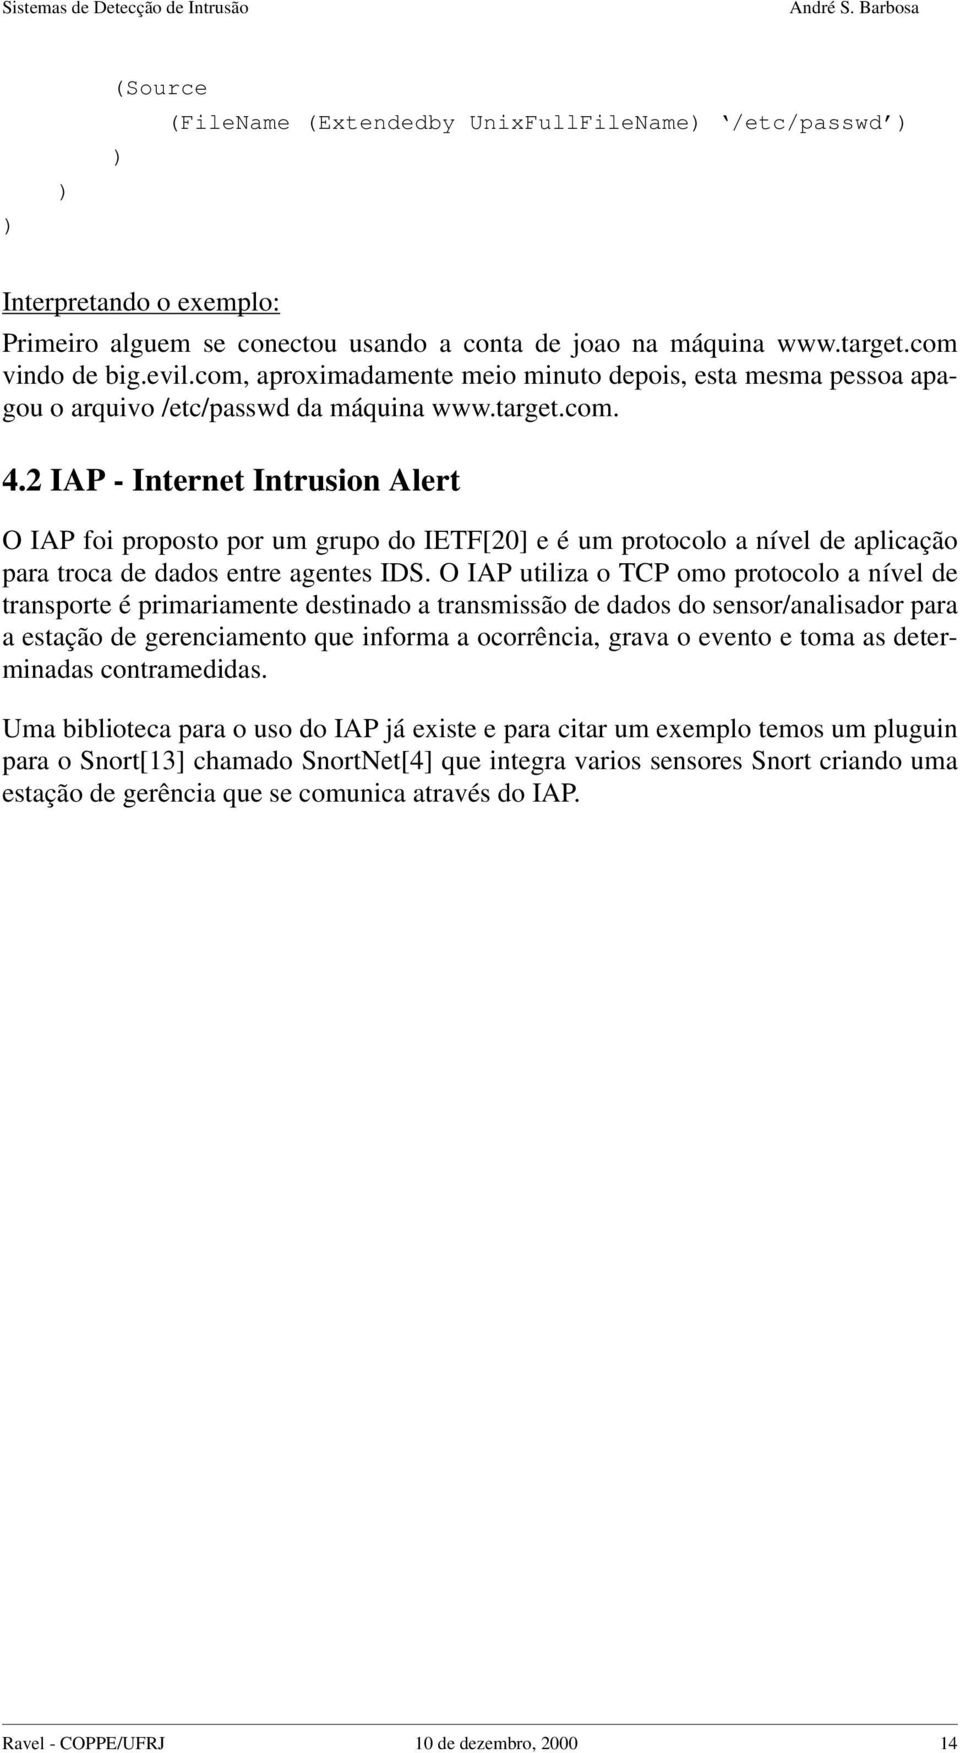 2 IAP - Internet Intrusion Alert O IAP foi proposto por um grupo do IETF[20] e é um protocolo a nível de aplicação para troca de dados entre agentes IDS.